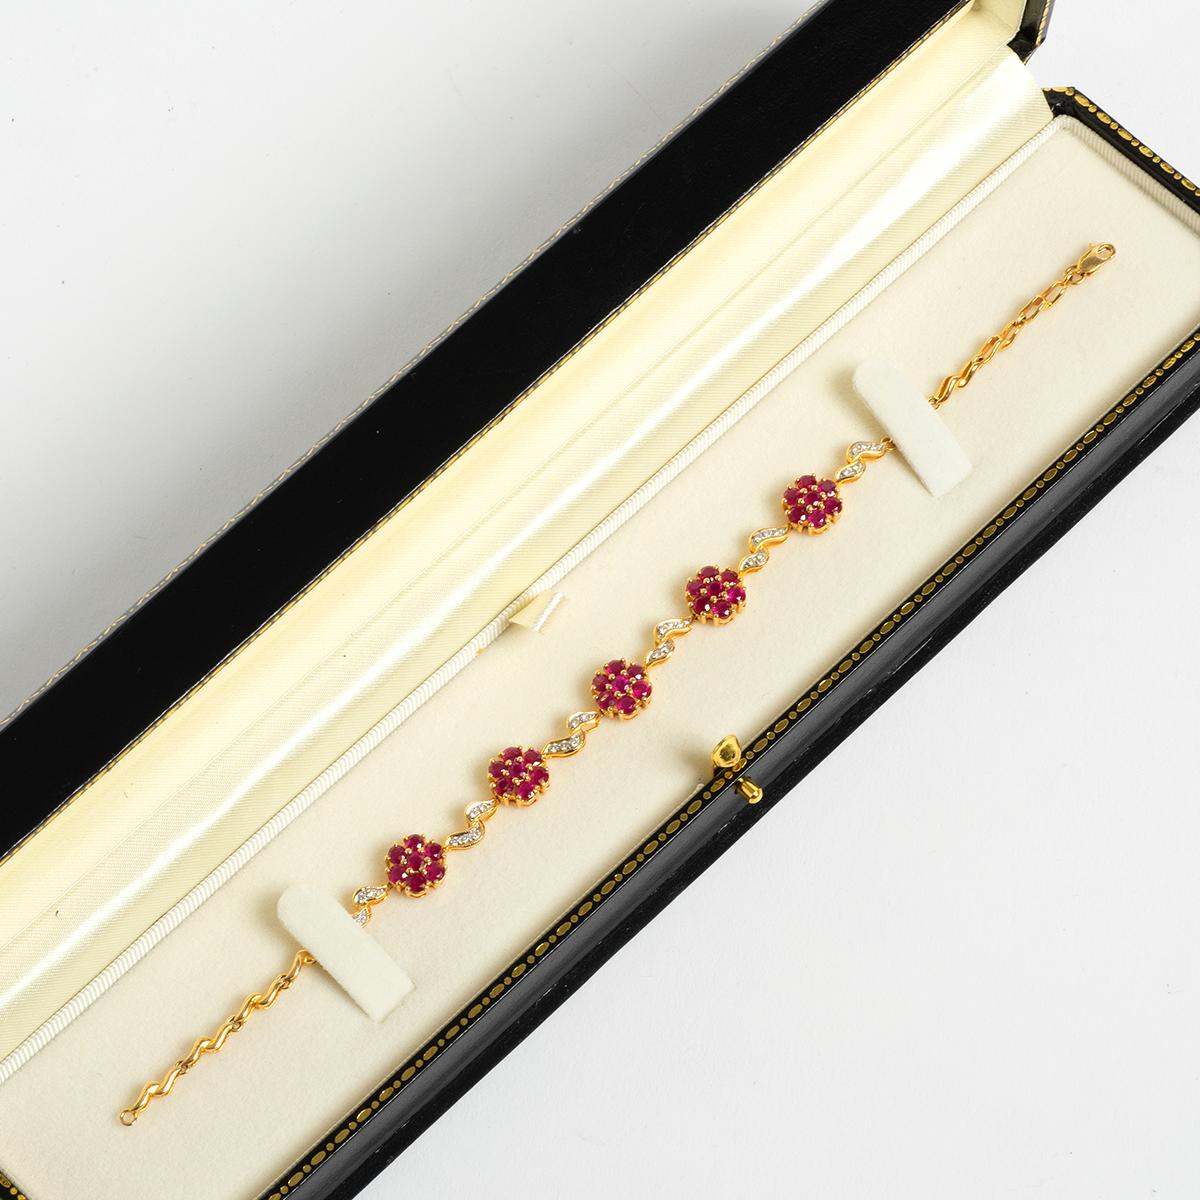 Wir freuen uns, Ihnen ein einzigartiges Stück aus unserer sorgfältig zusammengestellten Vintage & Prestige Schmuckkollektion präsentieren zu können: Dieses wunderschöne Armband aus Rubin und Diamant ist in 18 Karat Gelbgold gefasst und misst 20 mm.